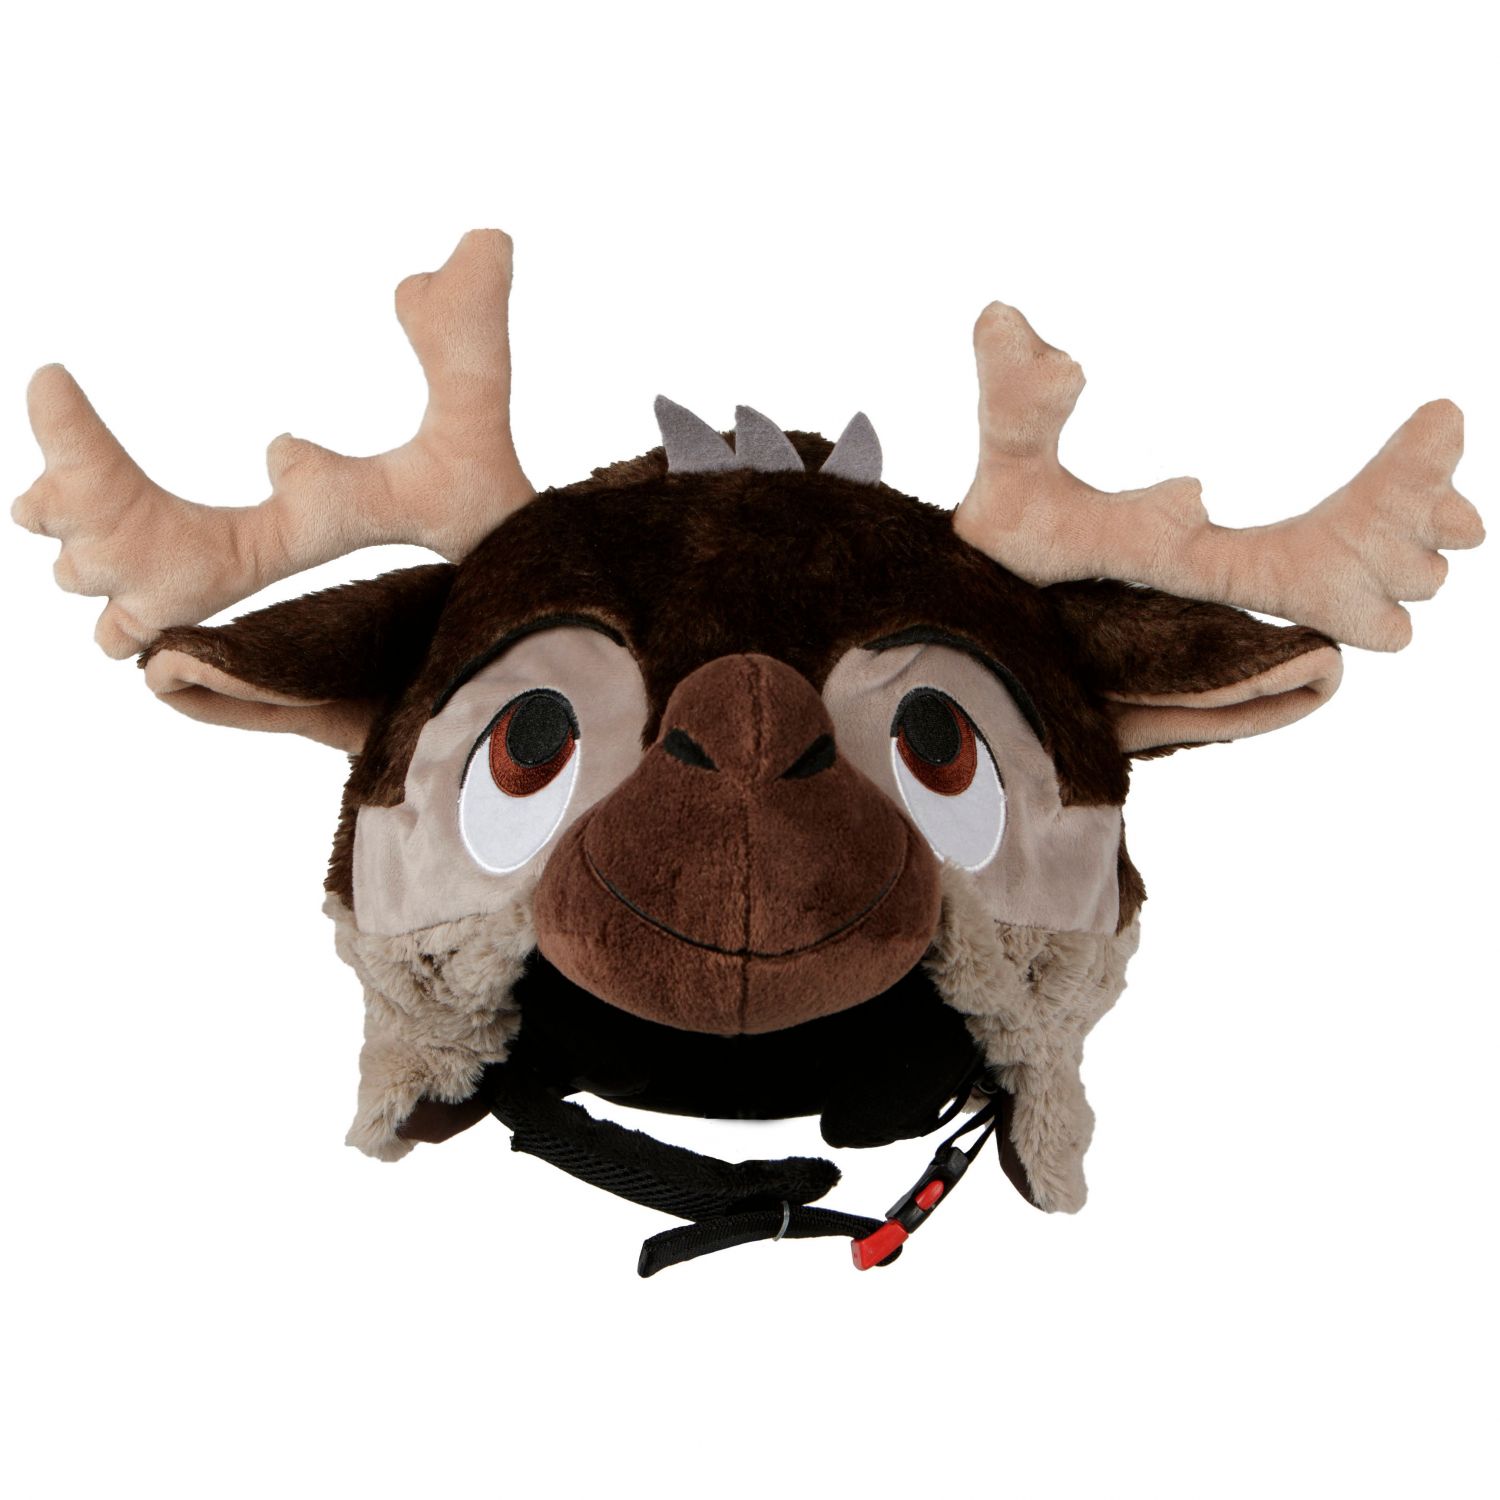 Brug Hoxyheads hjelmcover, elg til en forbedret oplevelse